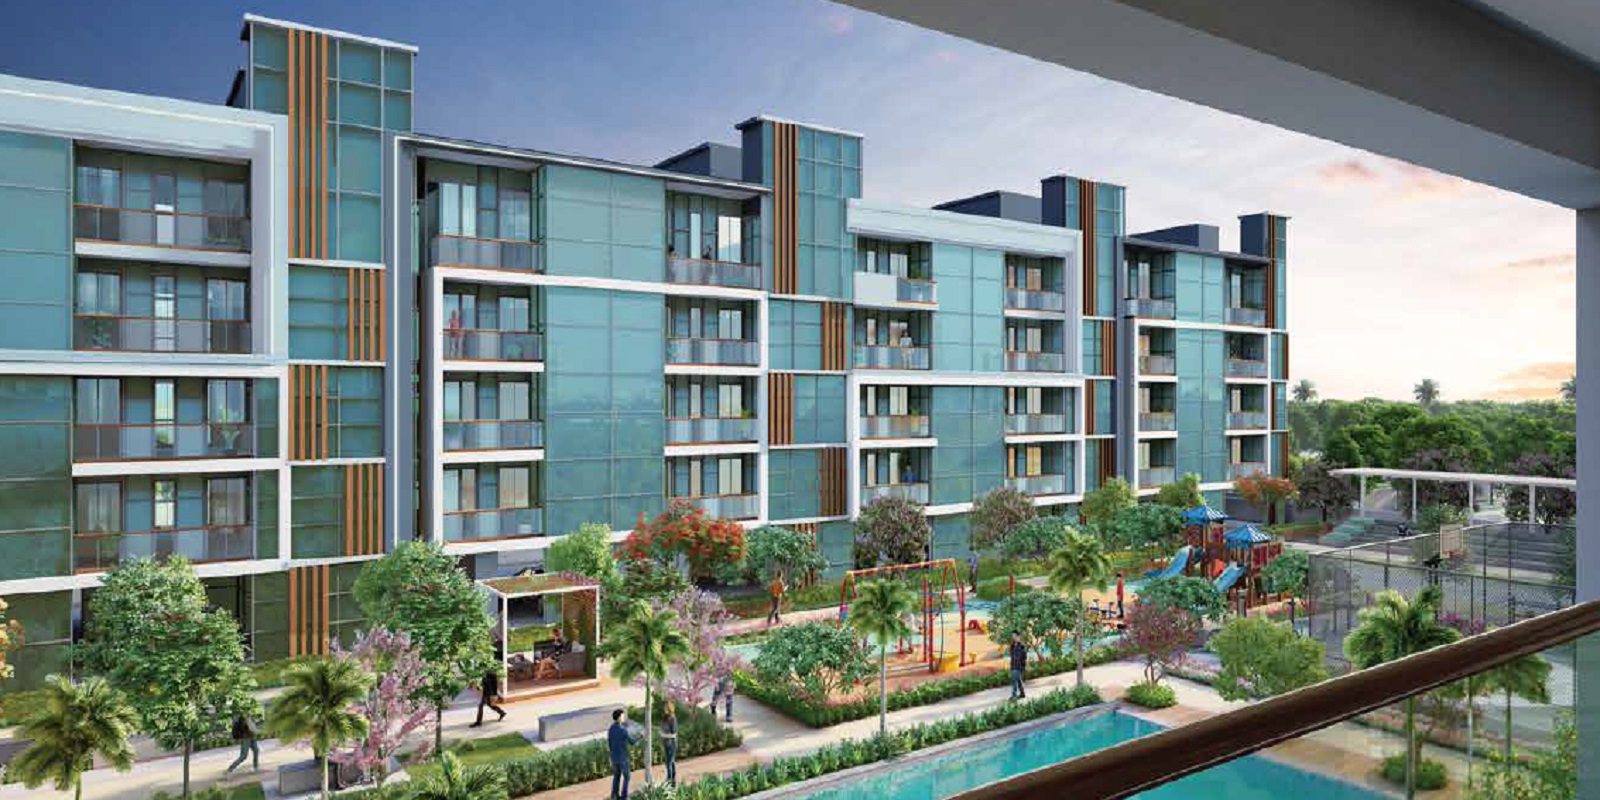 Signature Global City 63A Premium Luxury Apartments in Gurgaon.